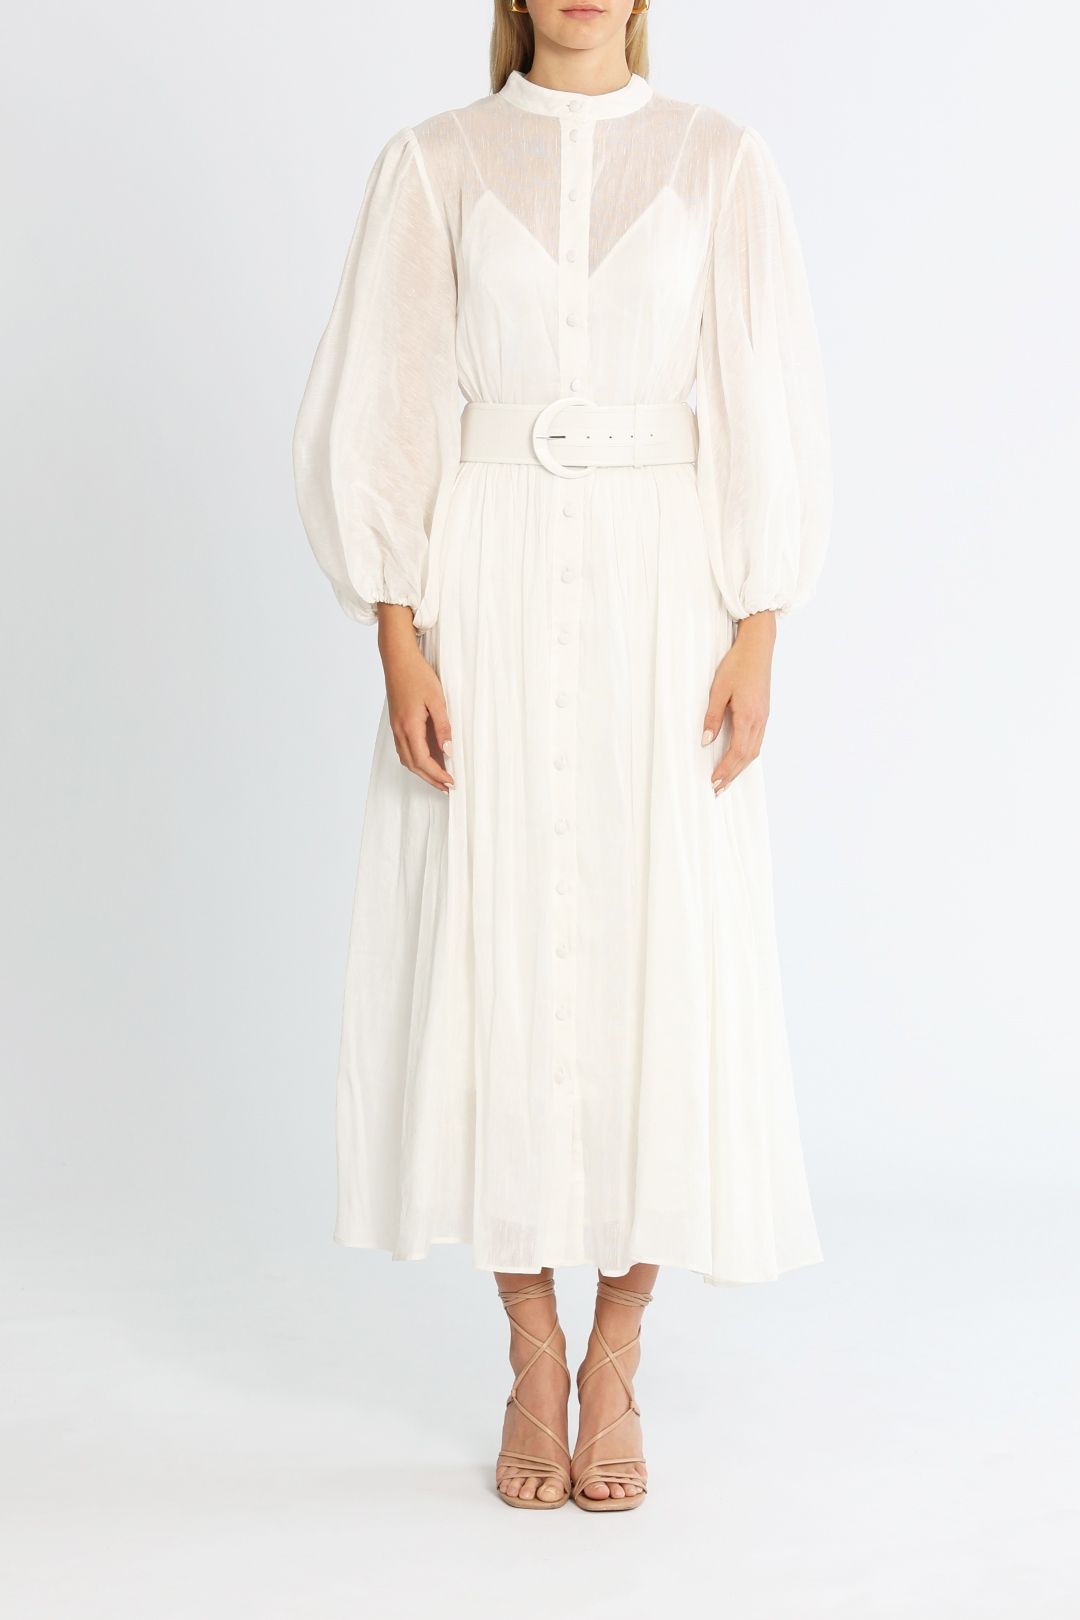 LEO LIN Dresses | Shop Designer LEO LIN Clothing Online